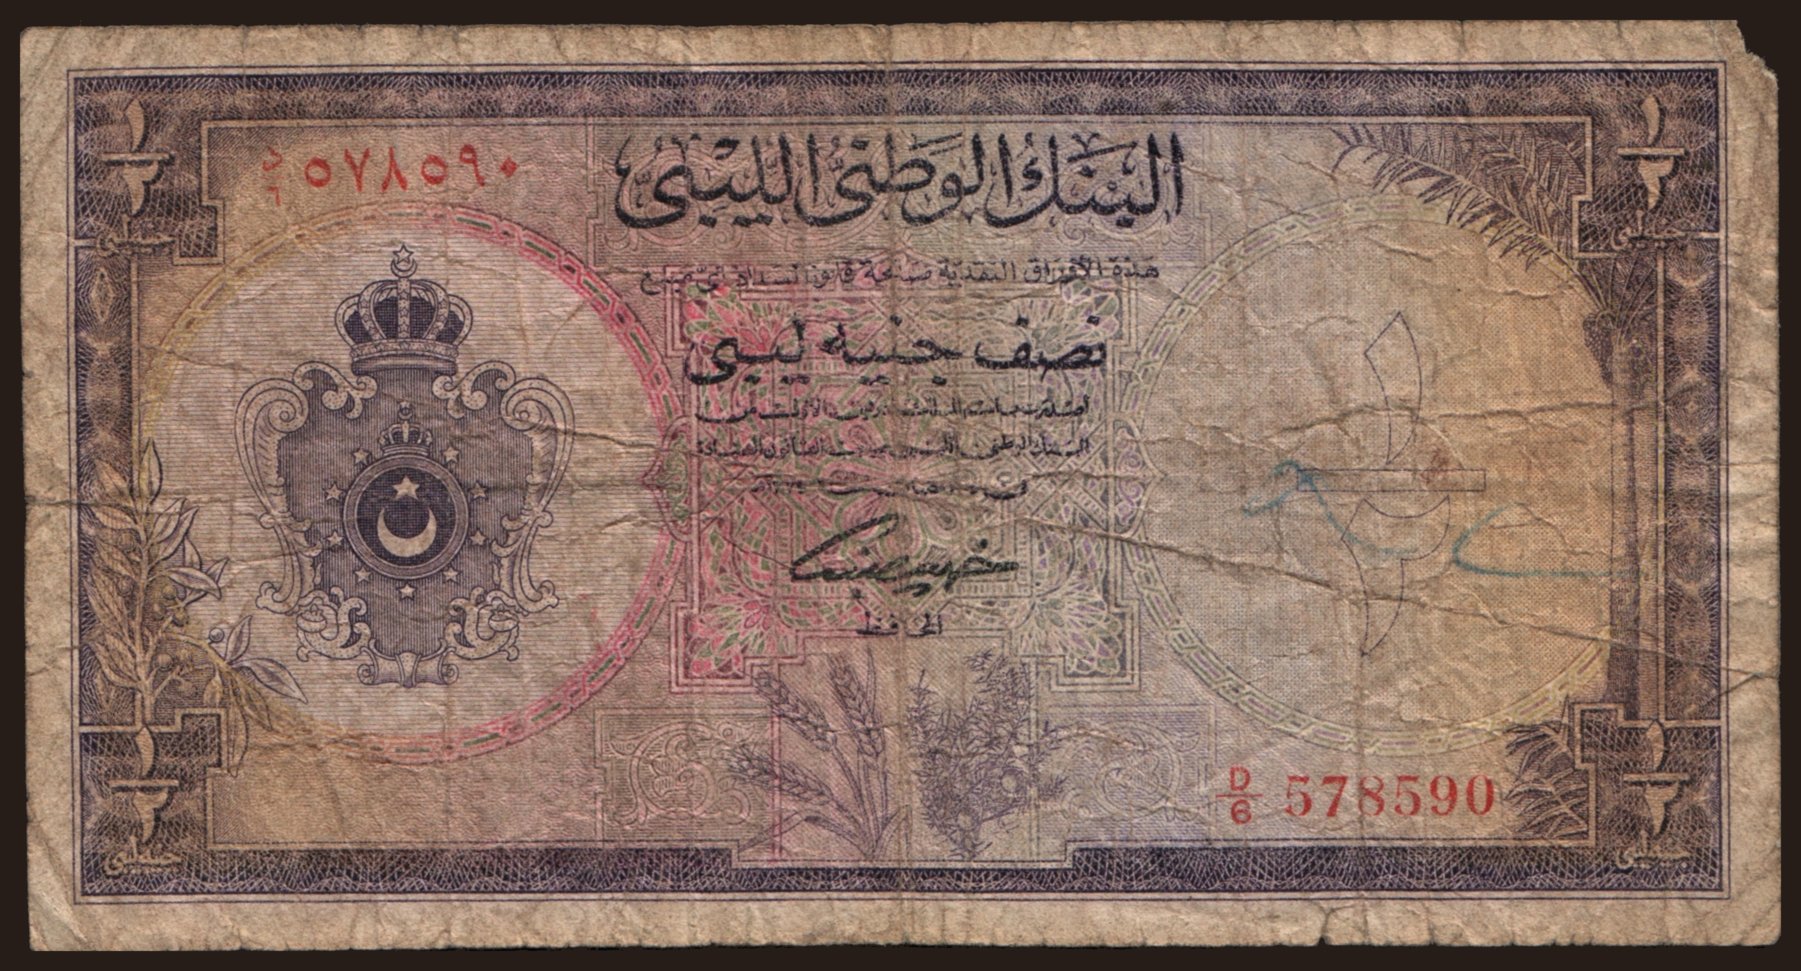 1/2 pound, 1955